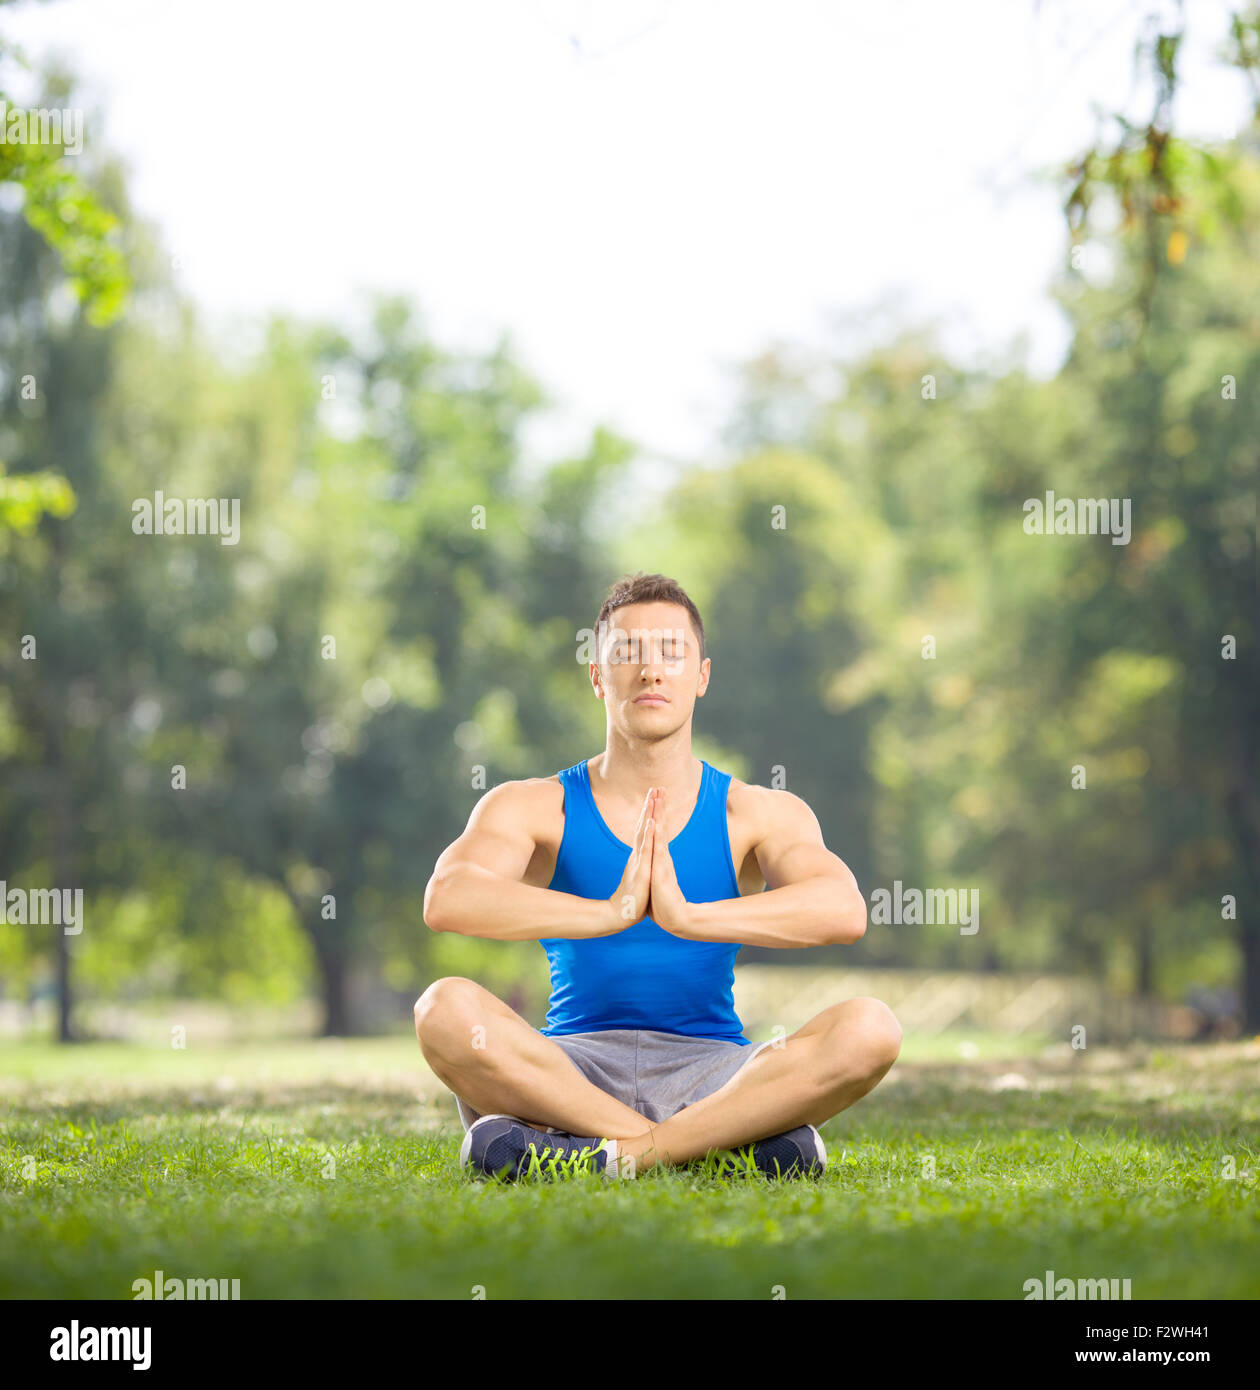 Junge Sportler auf dem Rasen sitzen und meditieren im Park an einem schönen sonnigen Tag mit Tilt-Shift-Objektiv geschossen Stockfoto